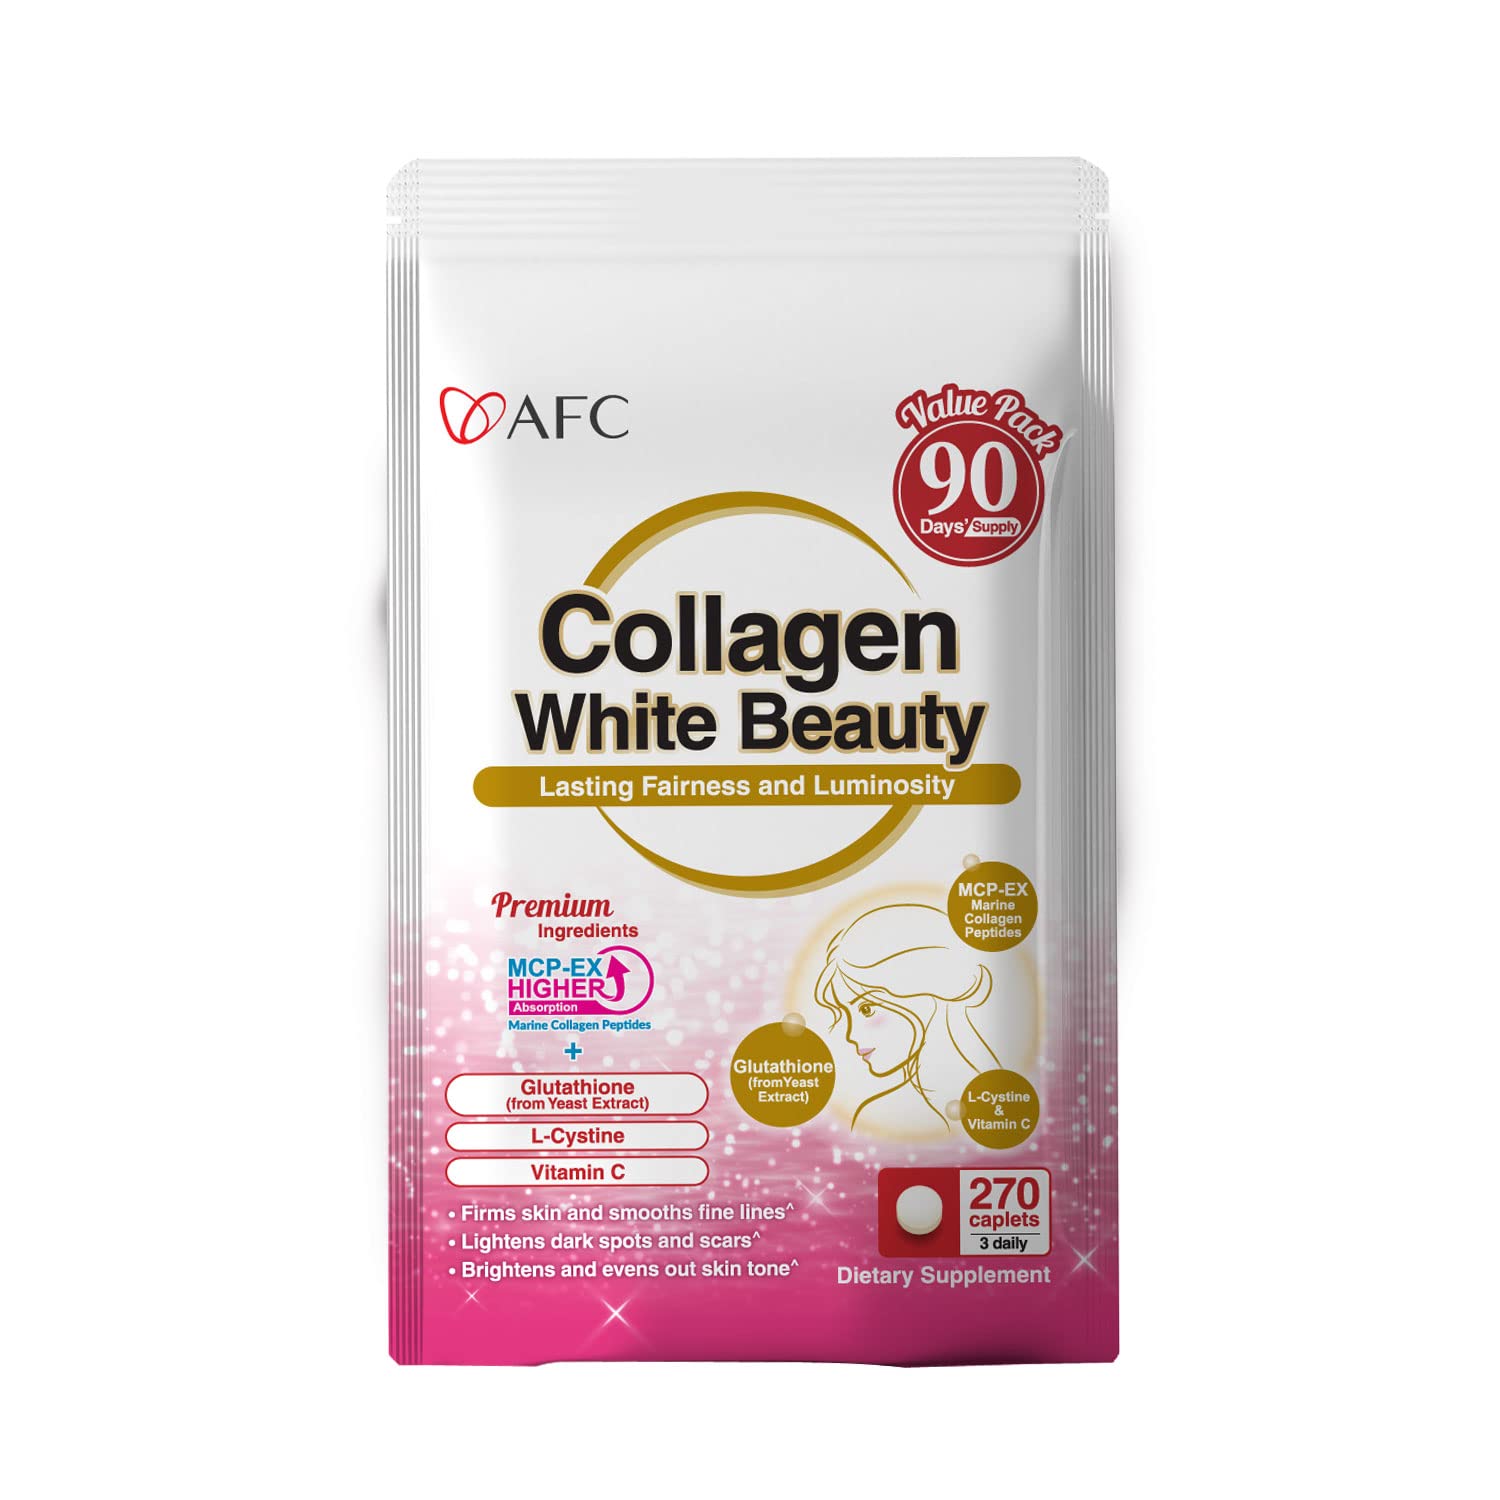 Collagen White Beauty: Lợi ích và công dụng của sản phẩm?